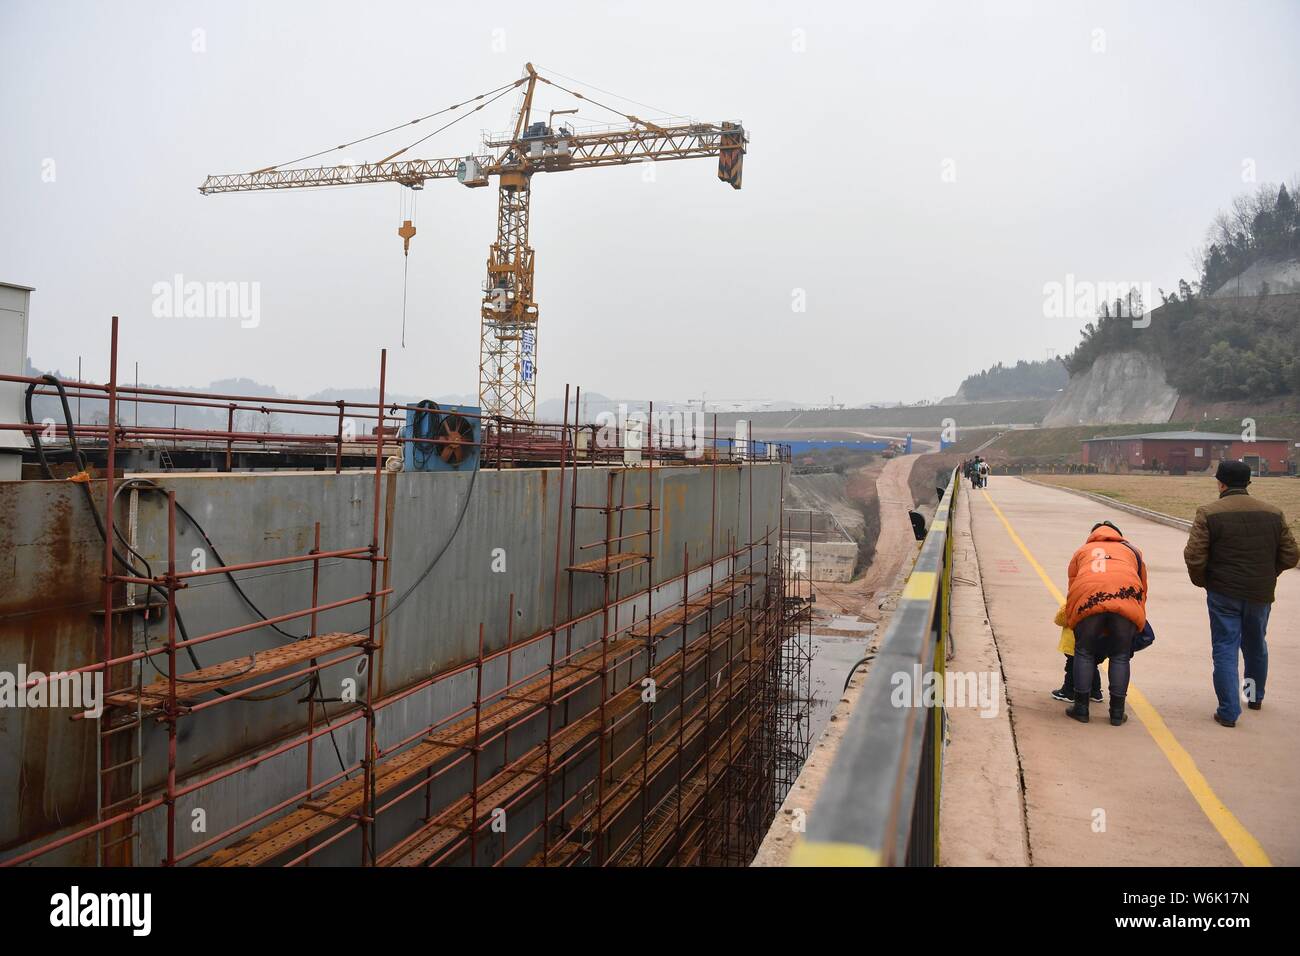 Vue sur le site de construction d'une réplique grandeur nature du paquebot Titanic dans le comté de Daying, ville de Suining, au sud-ouest du Sichuan Chine provinc Banque D'Images